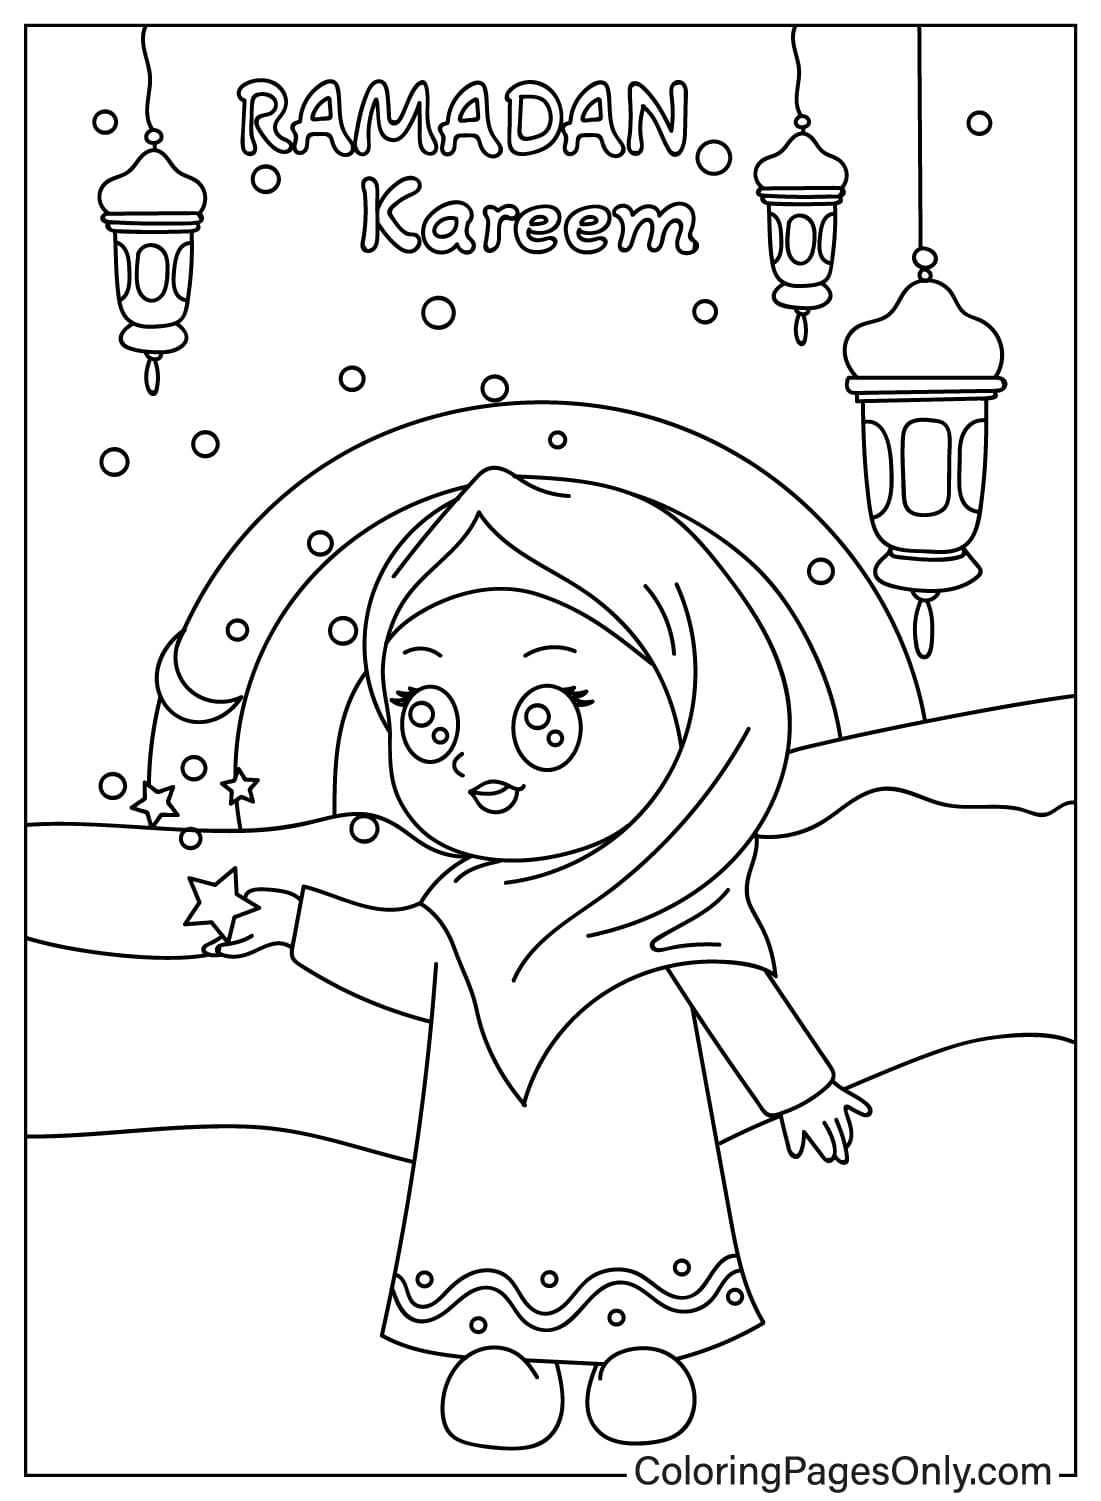 Página para colorear de Ramadán Kareem de Ramadán